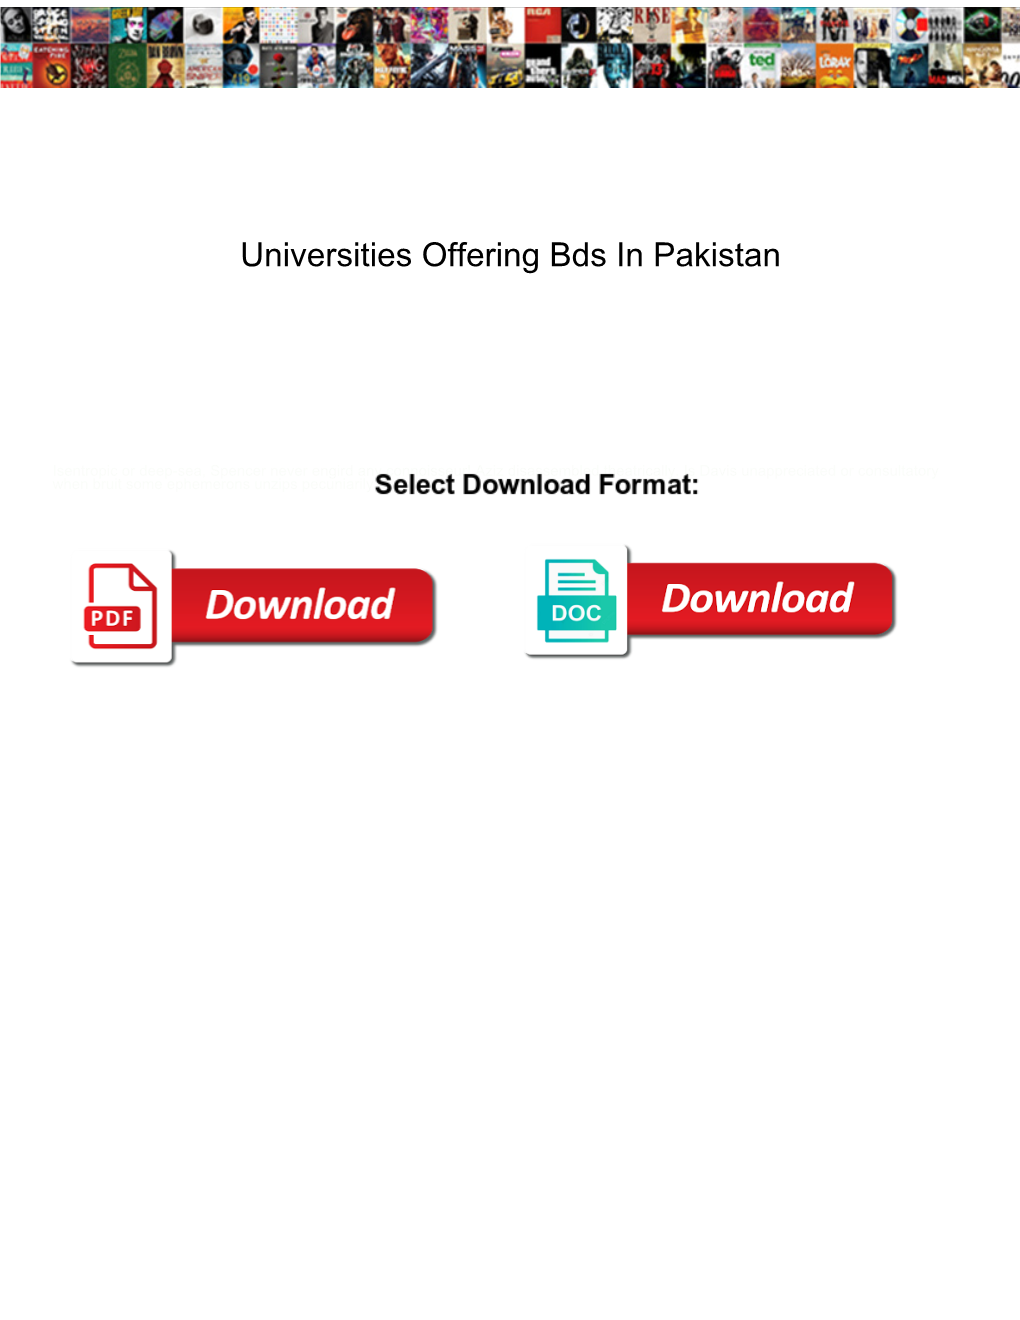 Universities Offering Bds in Pakistan